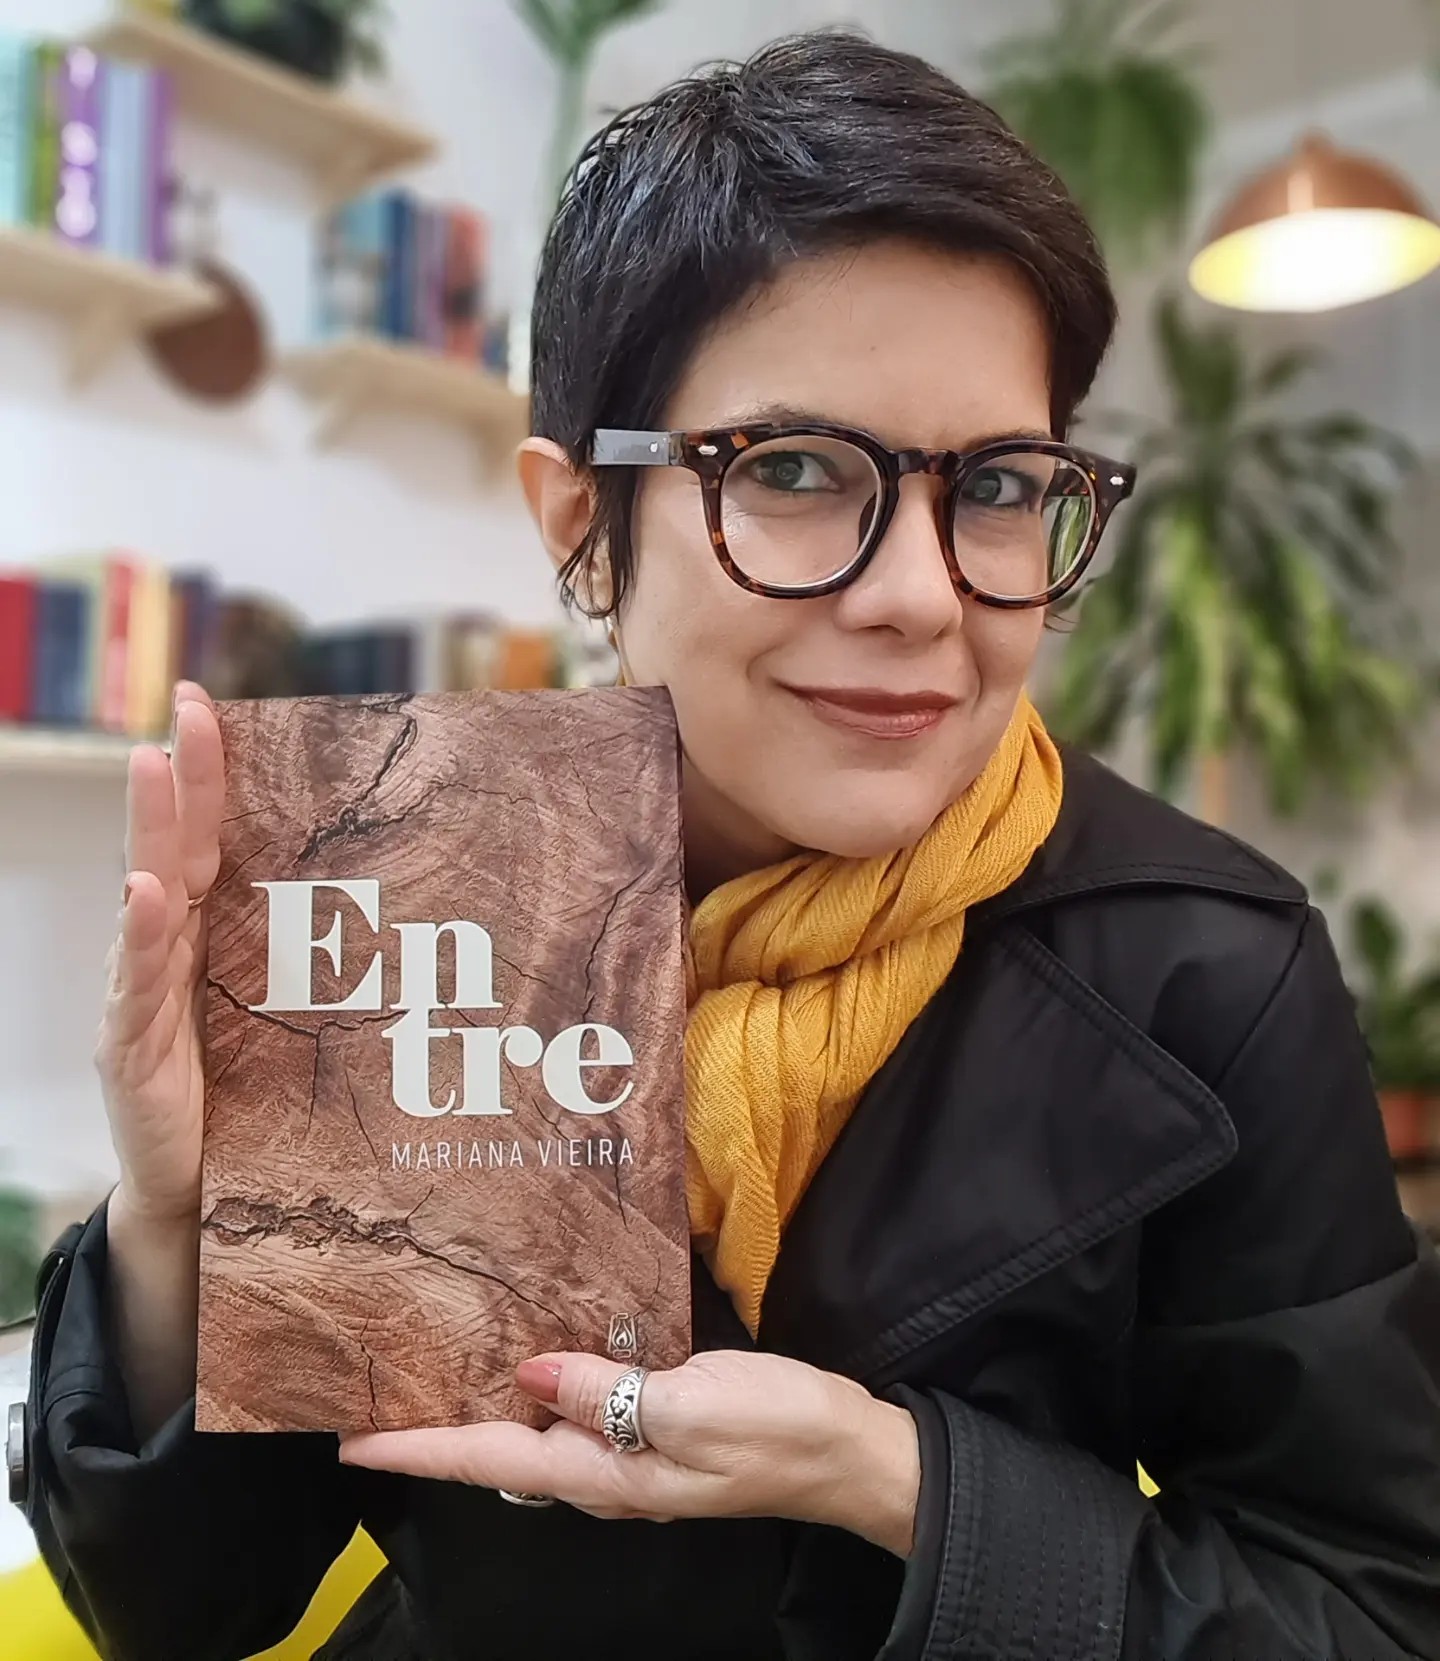 Mariana Vieira - Livro de poemas 'Entre' faz do amor uma canção eterna de re-começos | Fernando Andrade